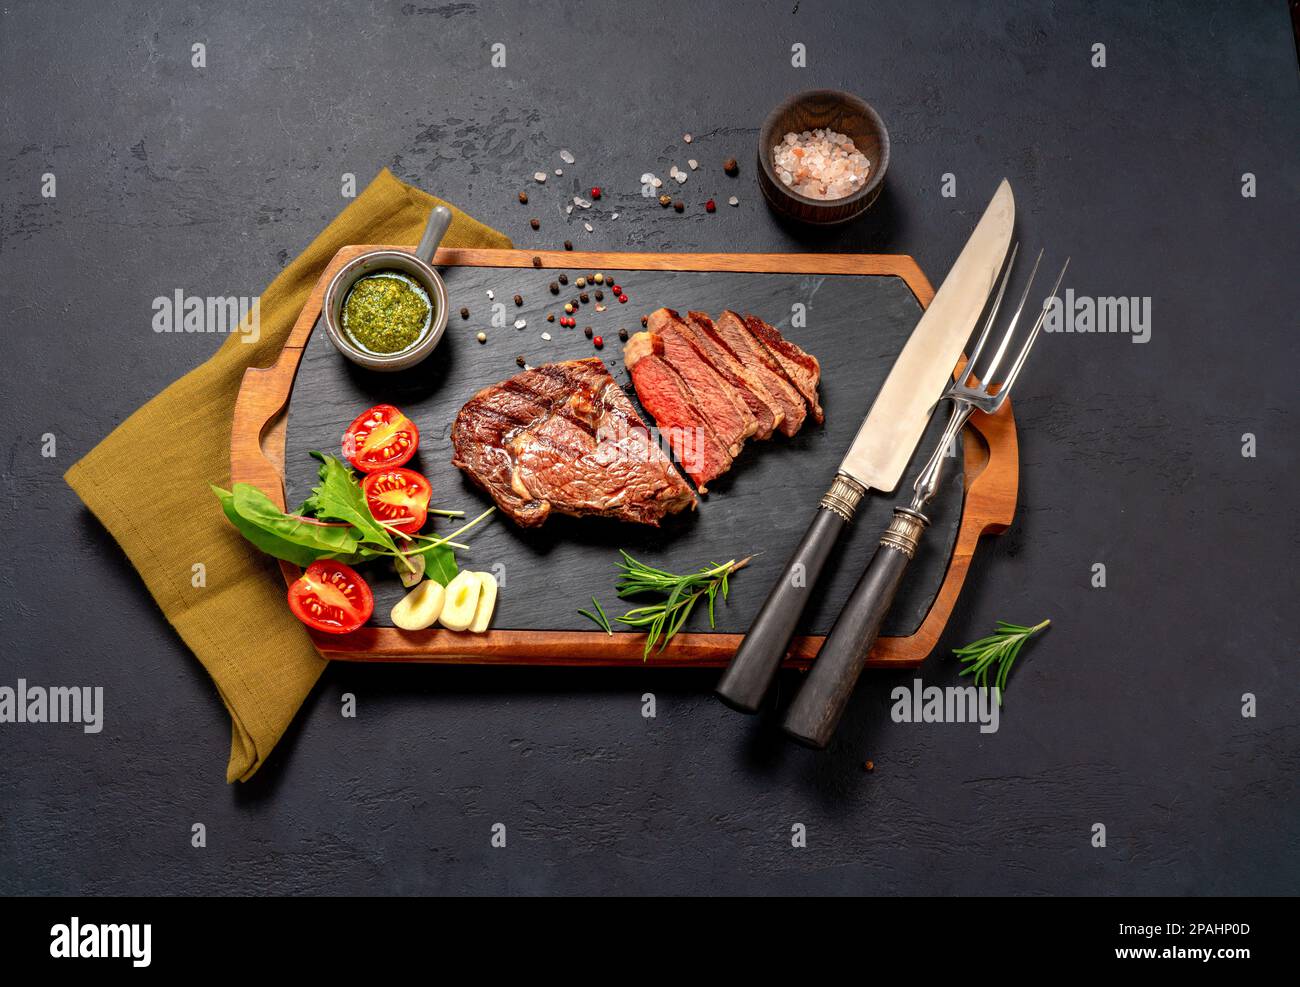 Steak de bœuf à la ribeye grillé, sauce chimichurri, herbes et épices sur une table sombre. Steak en tranches sur le tableau noir pour le steak Banque D'Images